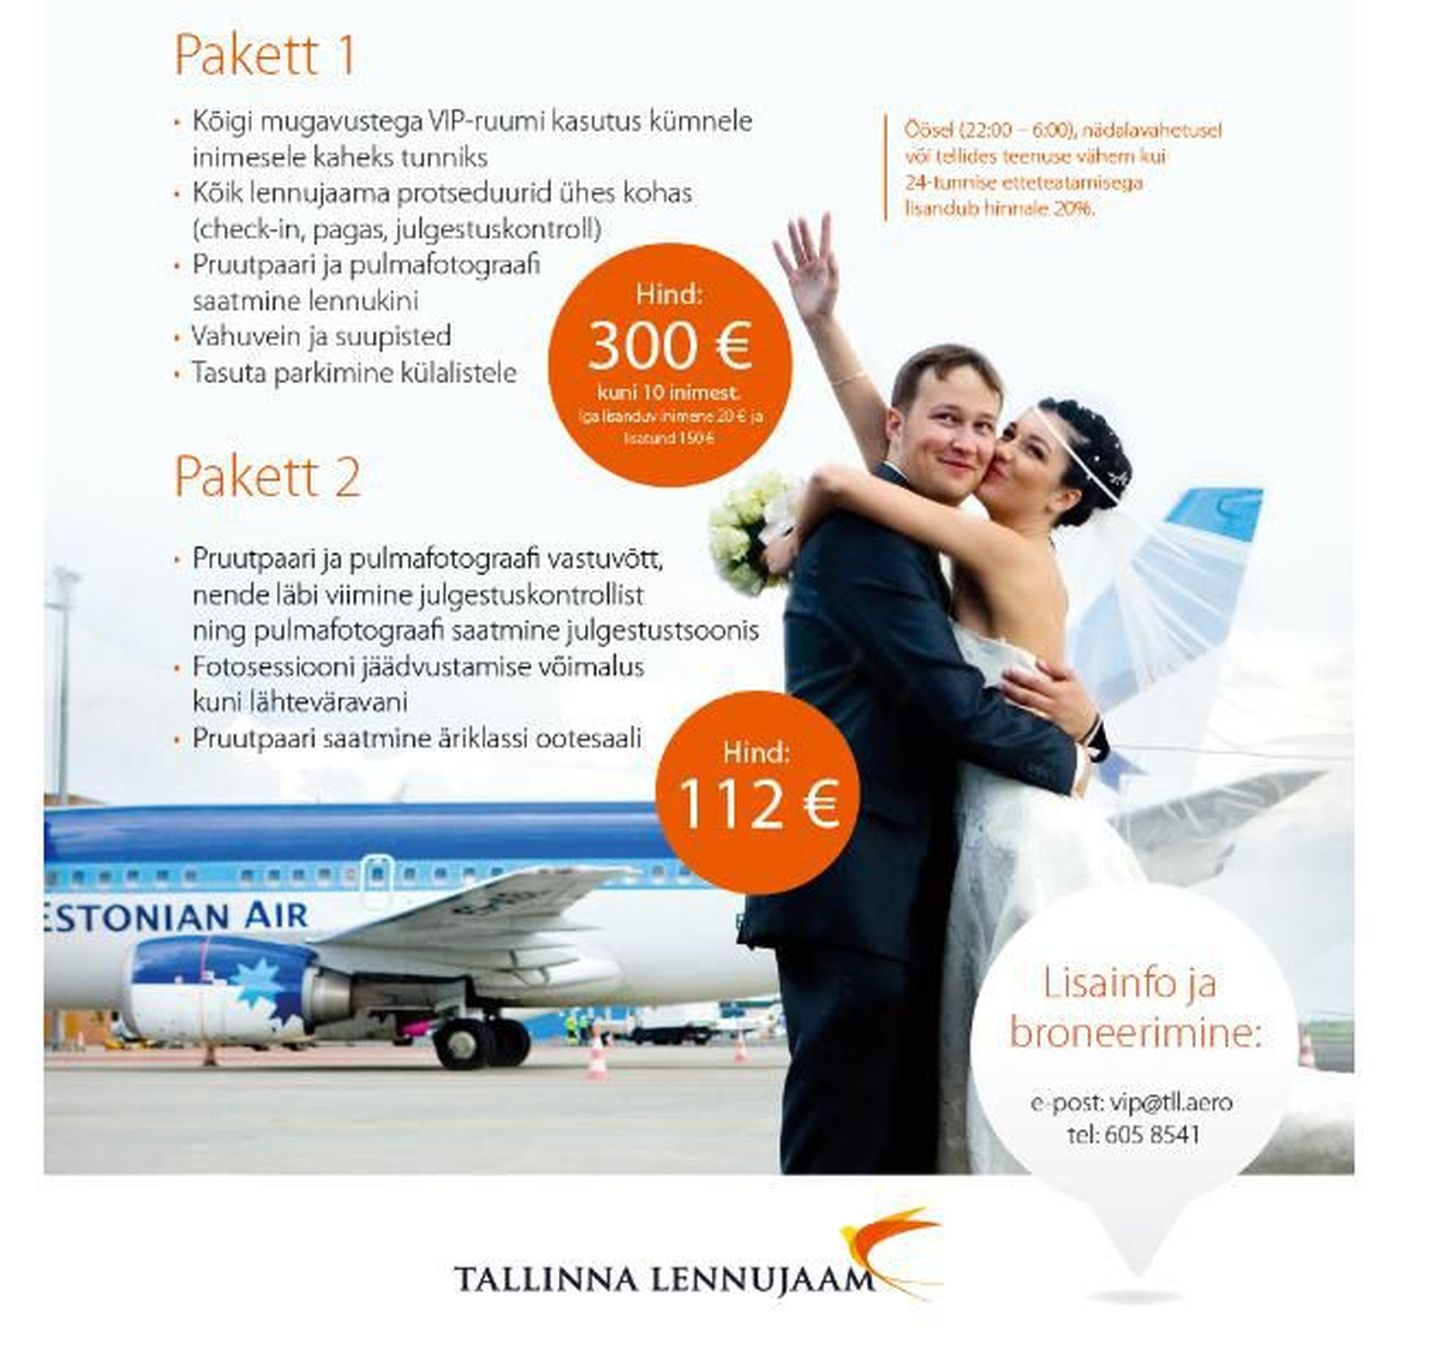 Tallinna lennujaam pakub pruutpaaridele võimalust meeldejäävalt pulmareisile sõita.